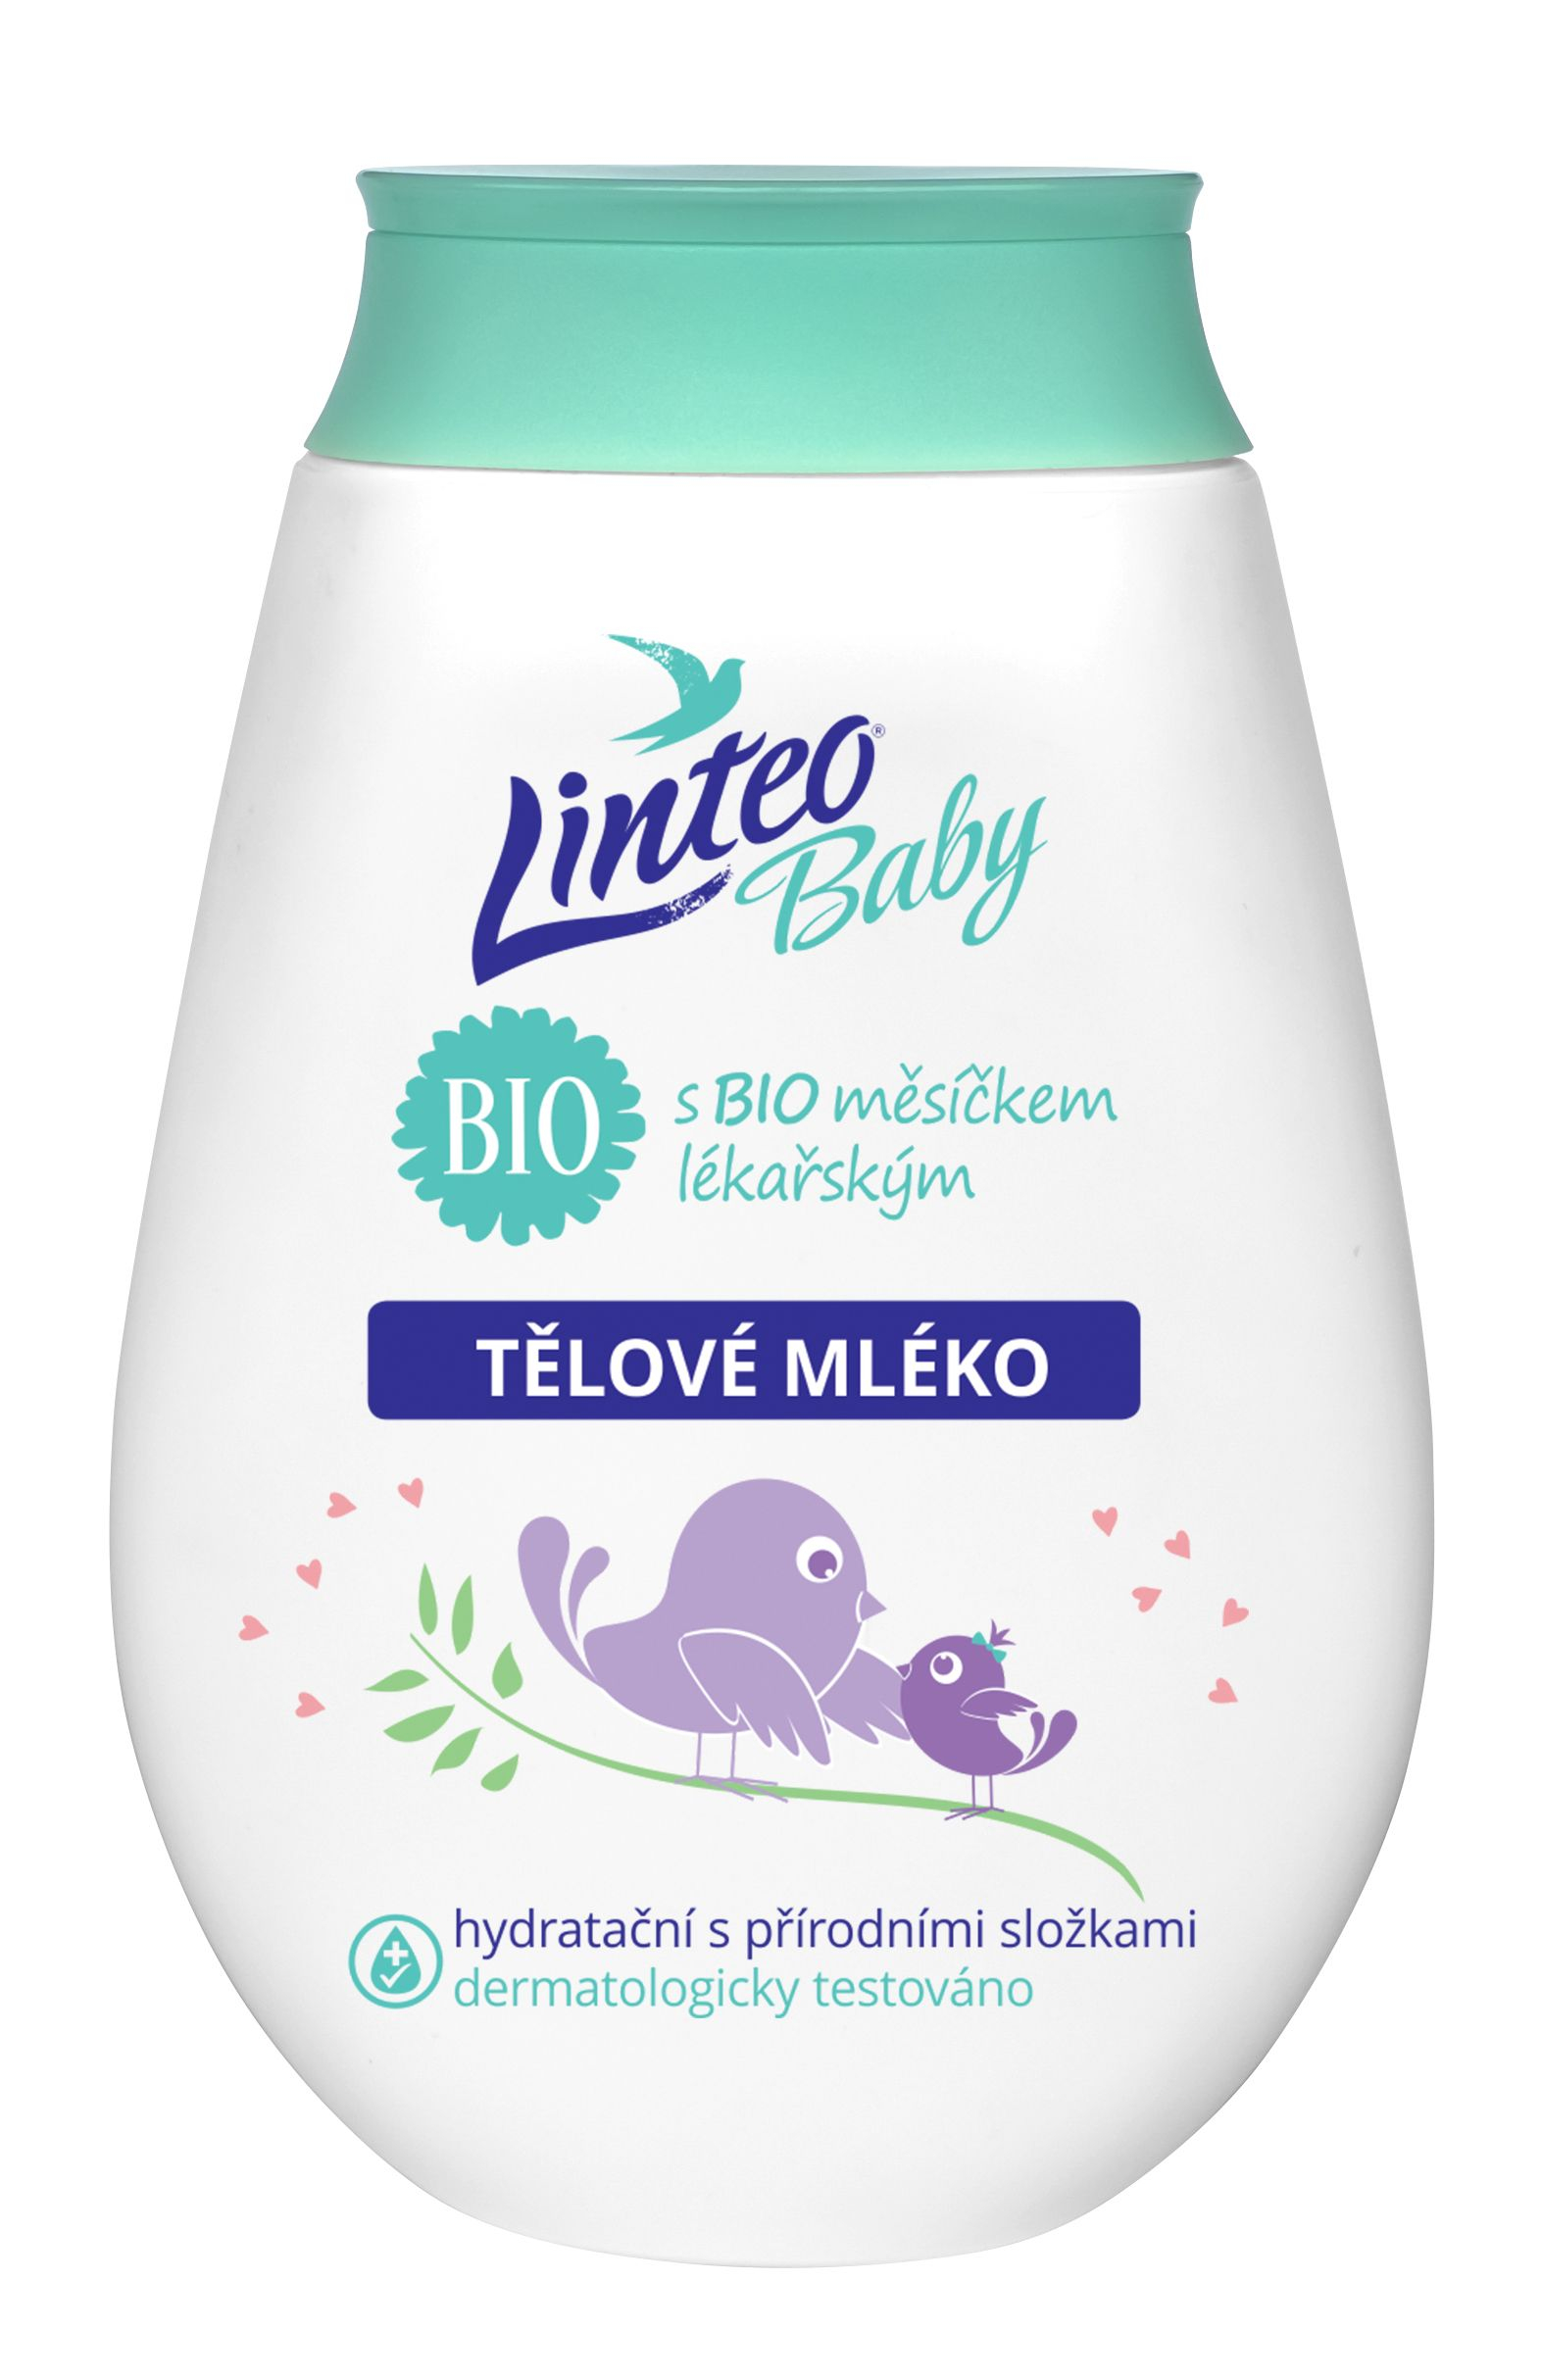 Linteo Baby Dětské tělové mléko s BIO měsíčkem lékařským 250 ml Linteo